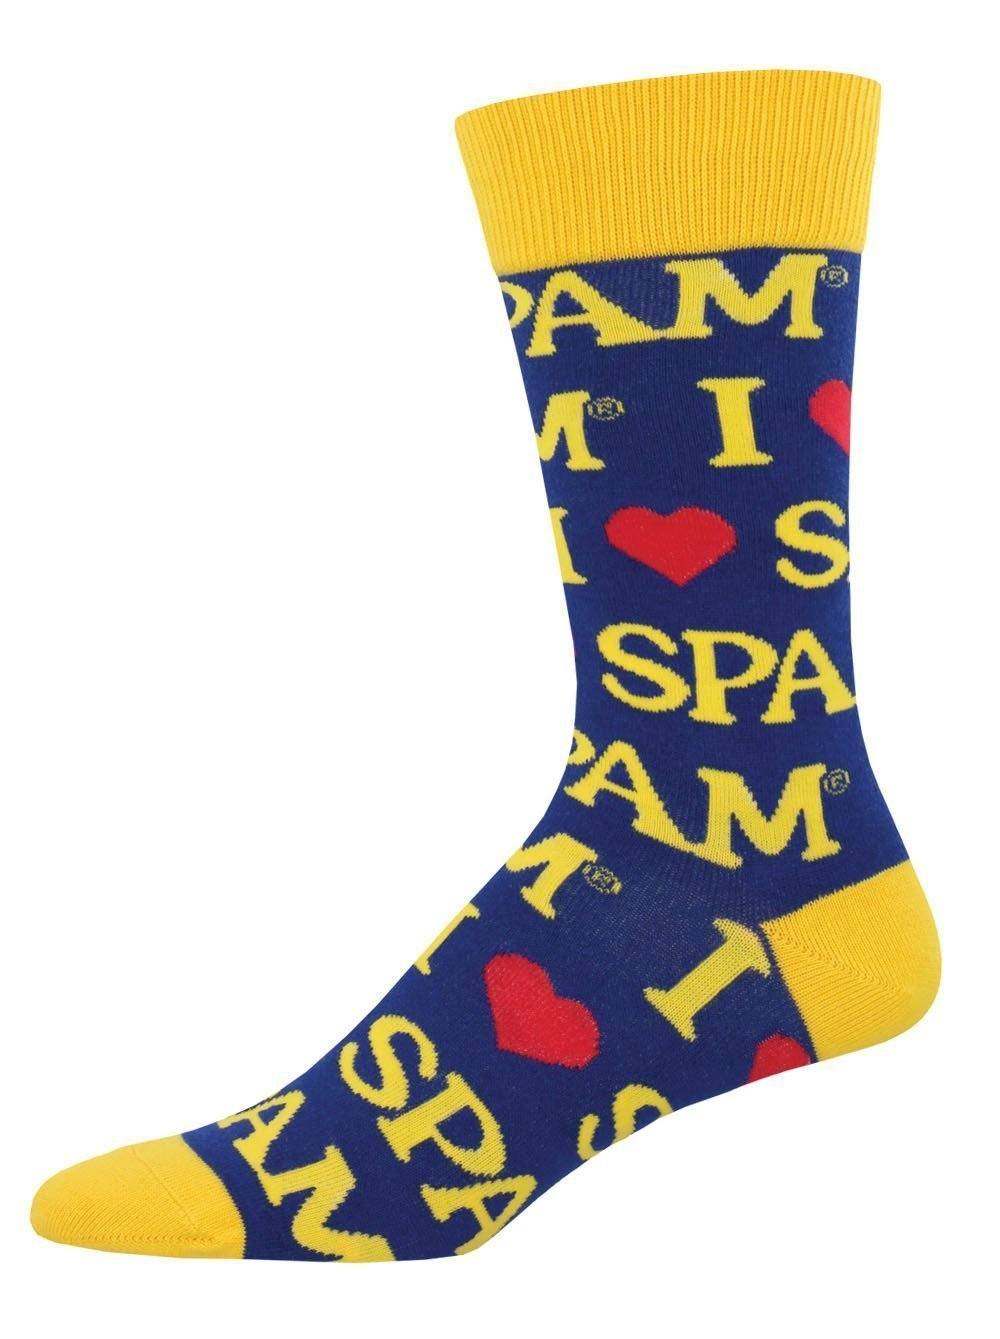 Socksmith - Spam Crew Socks | Men's - Knock Your Socks Off